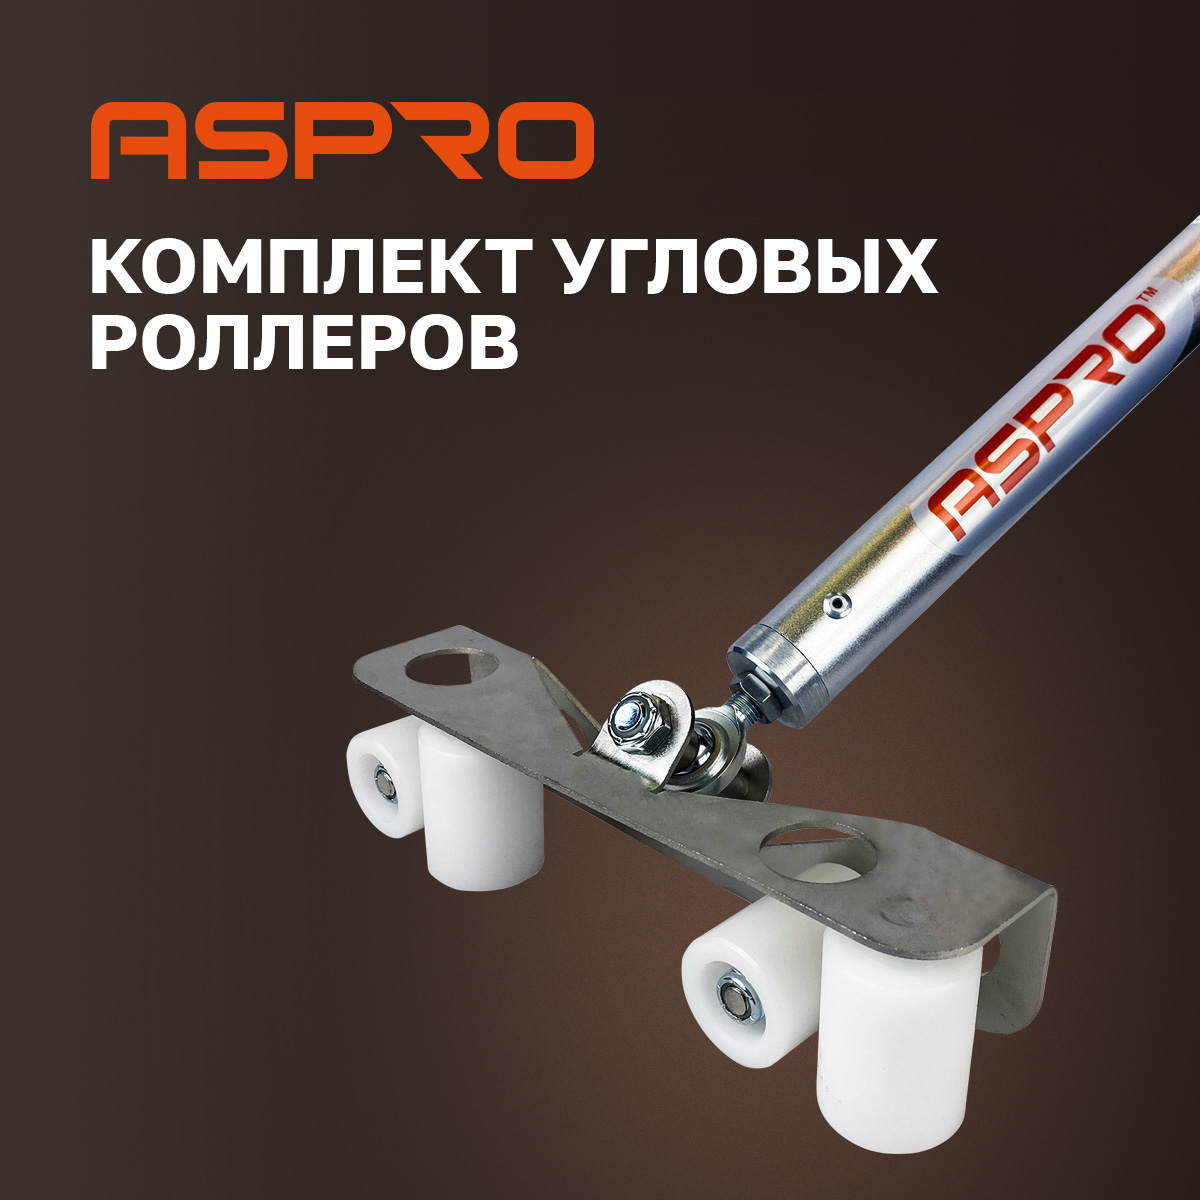 Комплект угловых роллеров Aspro, 102280 массажер роллер охлождающий